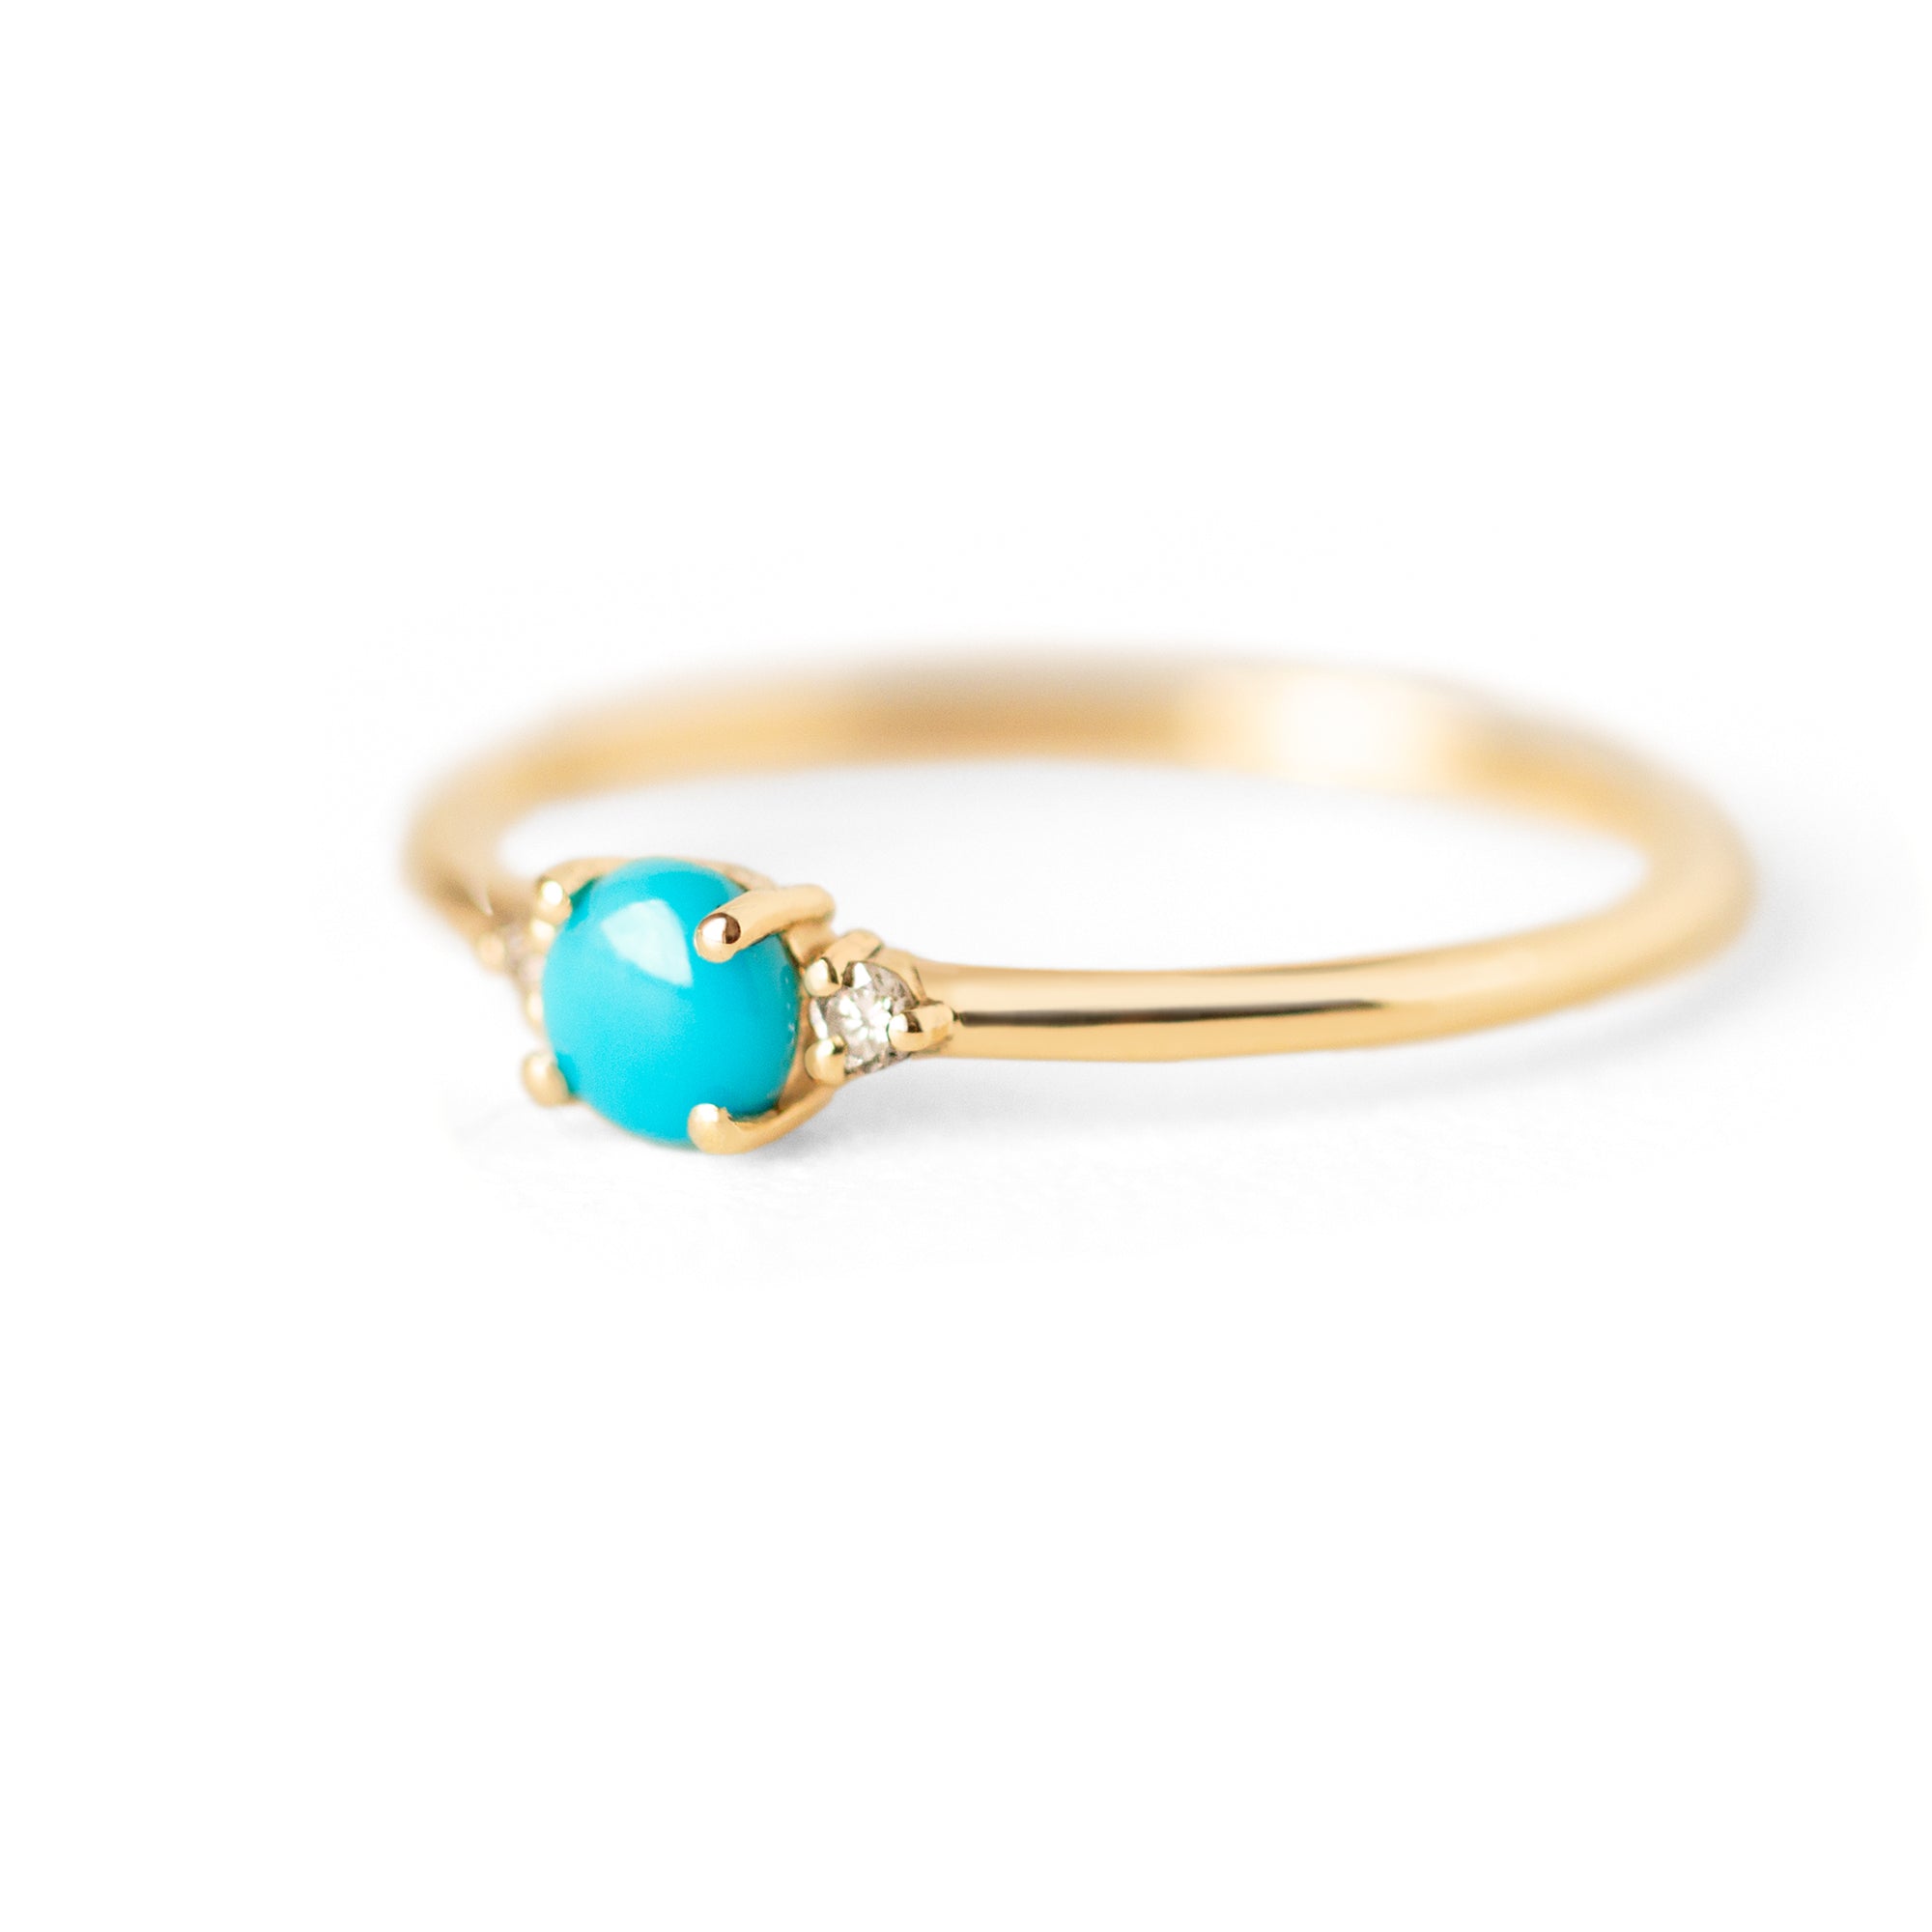 Jamie Park Jewelry - Diamond Turquoise  Ring Set